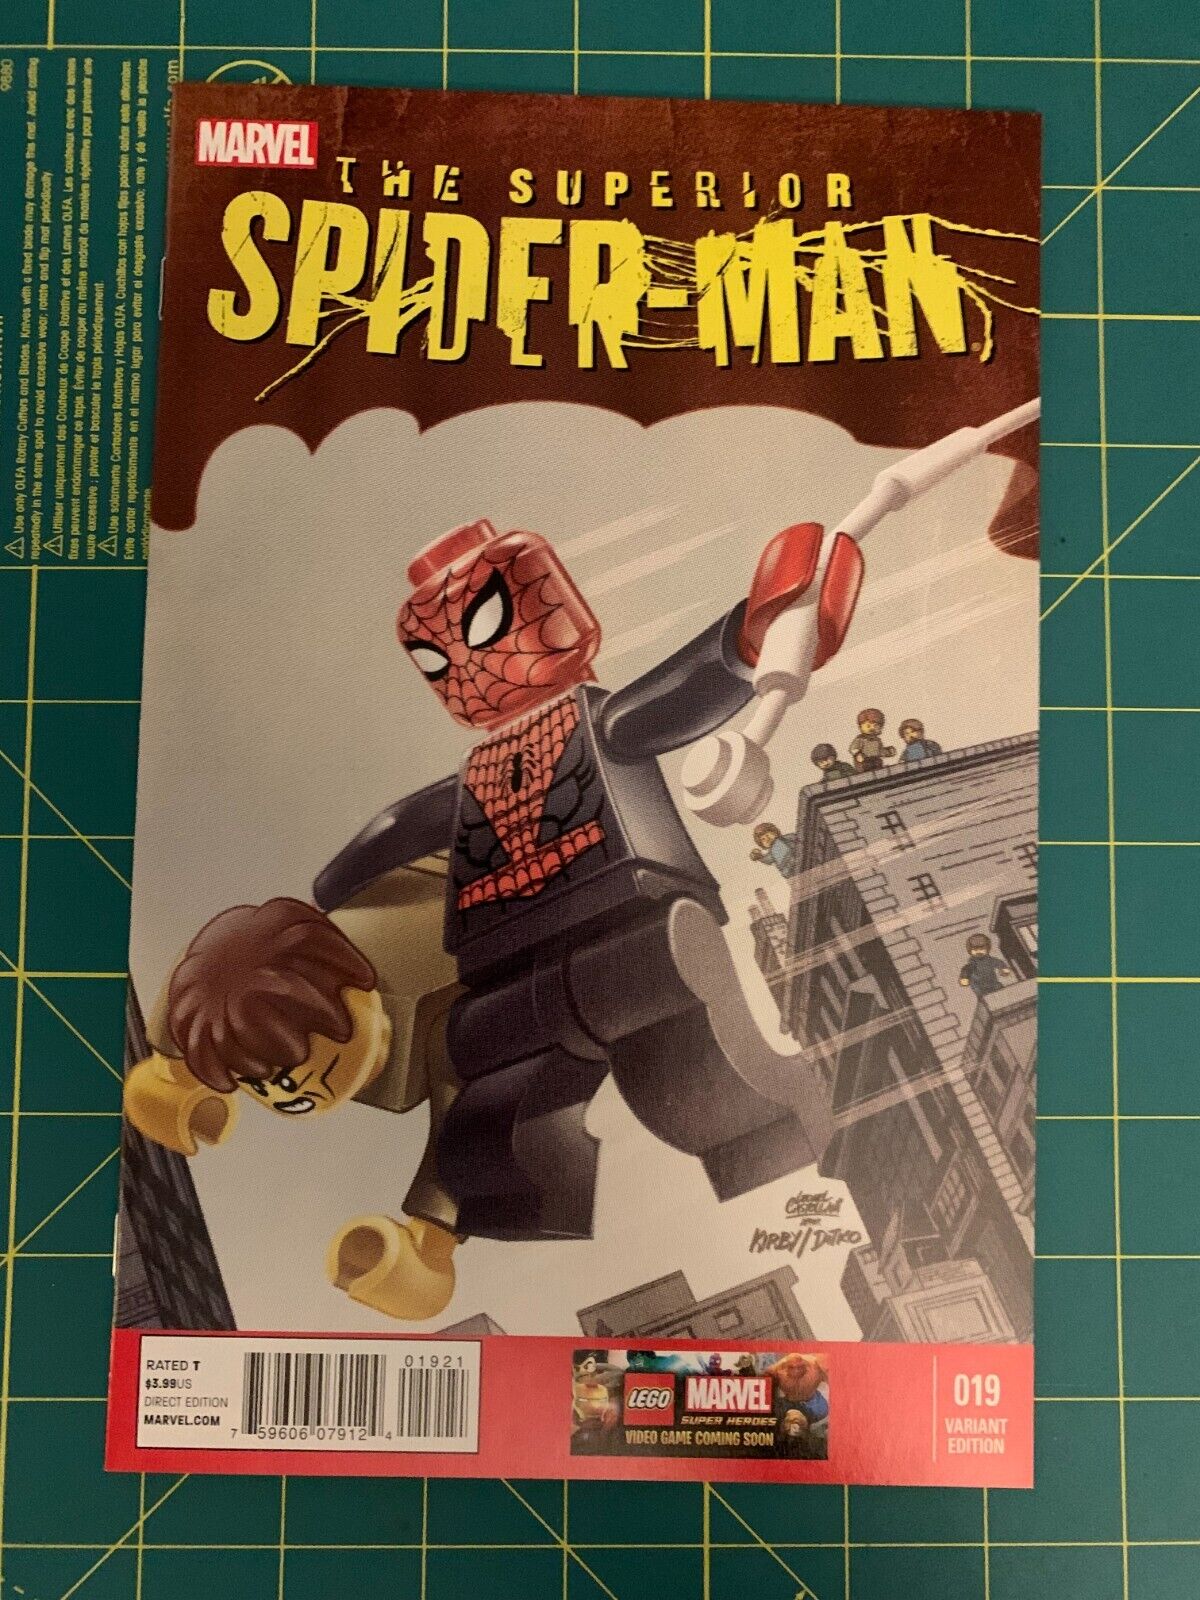 The Superior Spider-Man #1 - Dec 2013 - Vol.1 - Minor Key - (9371)